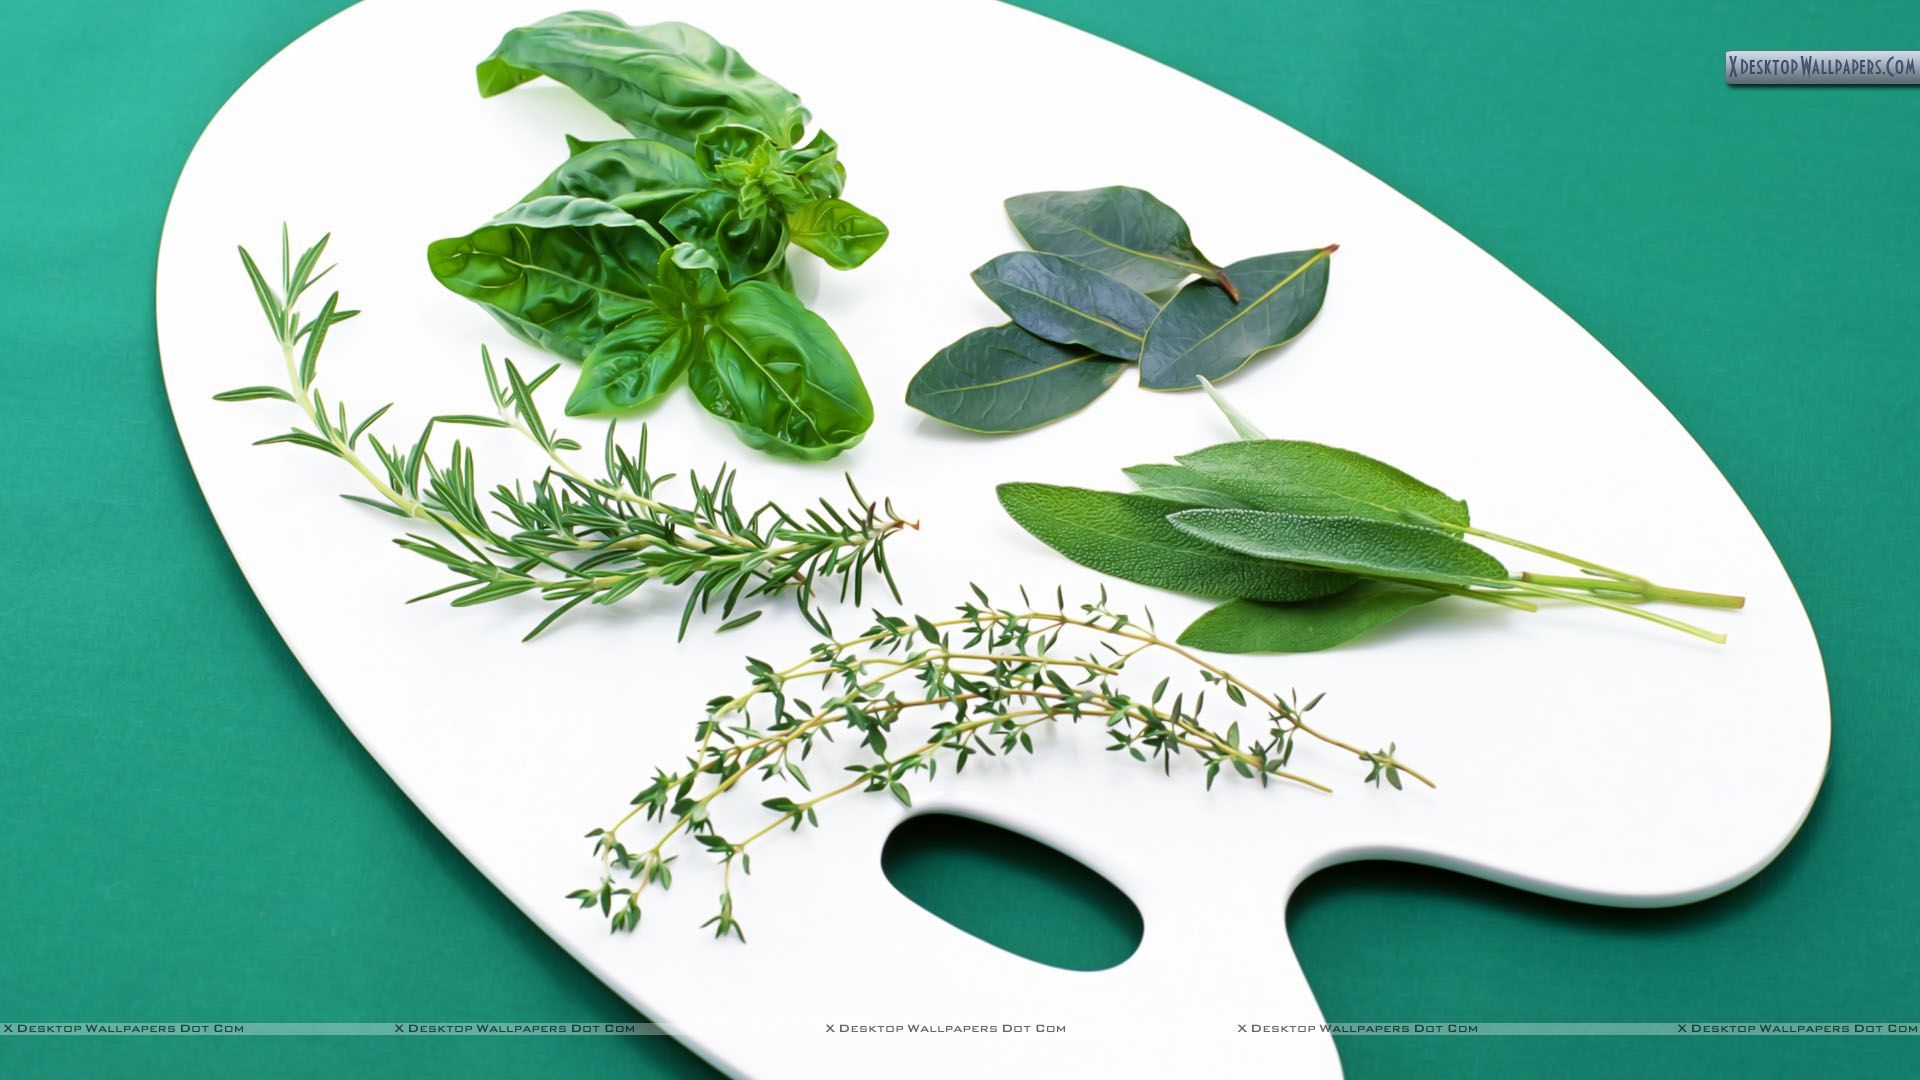 Medicinal Herbs Wallpaper. Medicinal Herbs Wallpaper, Herbs Wallpaper and Fresh Herbs Background